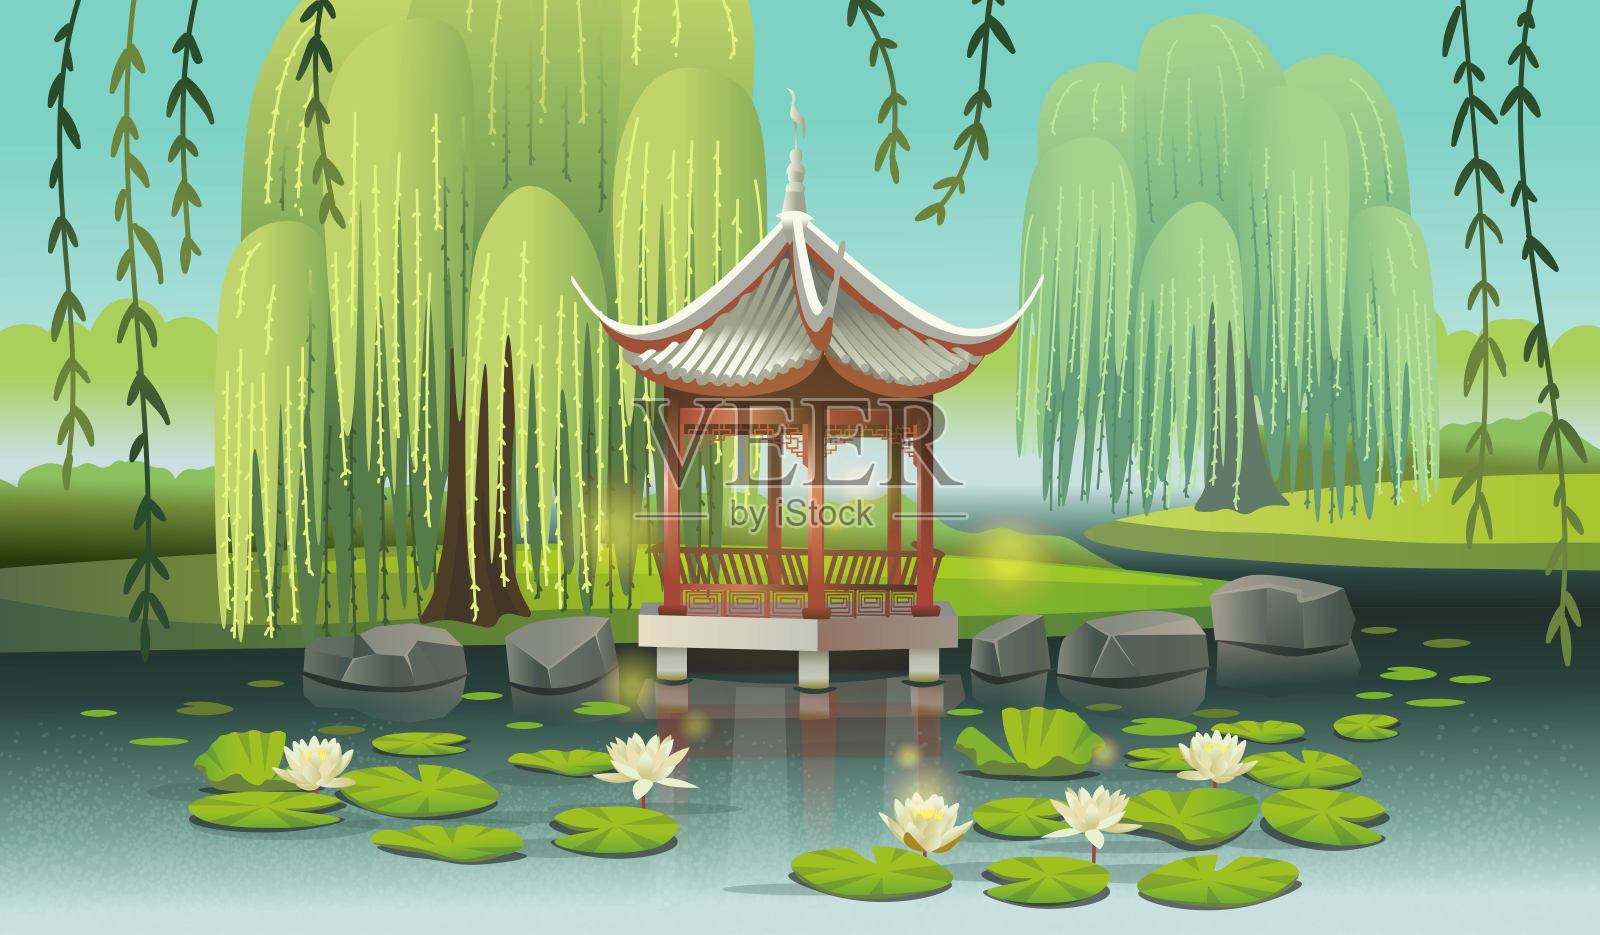 湖上有睡莲和柳树的中式凉亭。Ð卡通风格矢量插图。插画图片素材